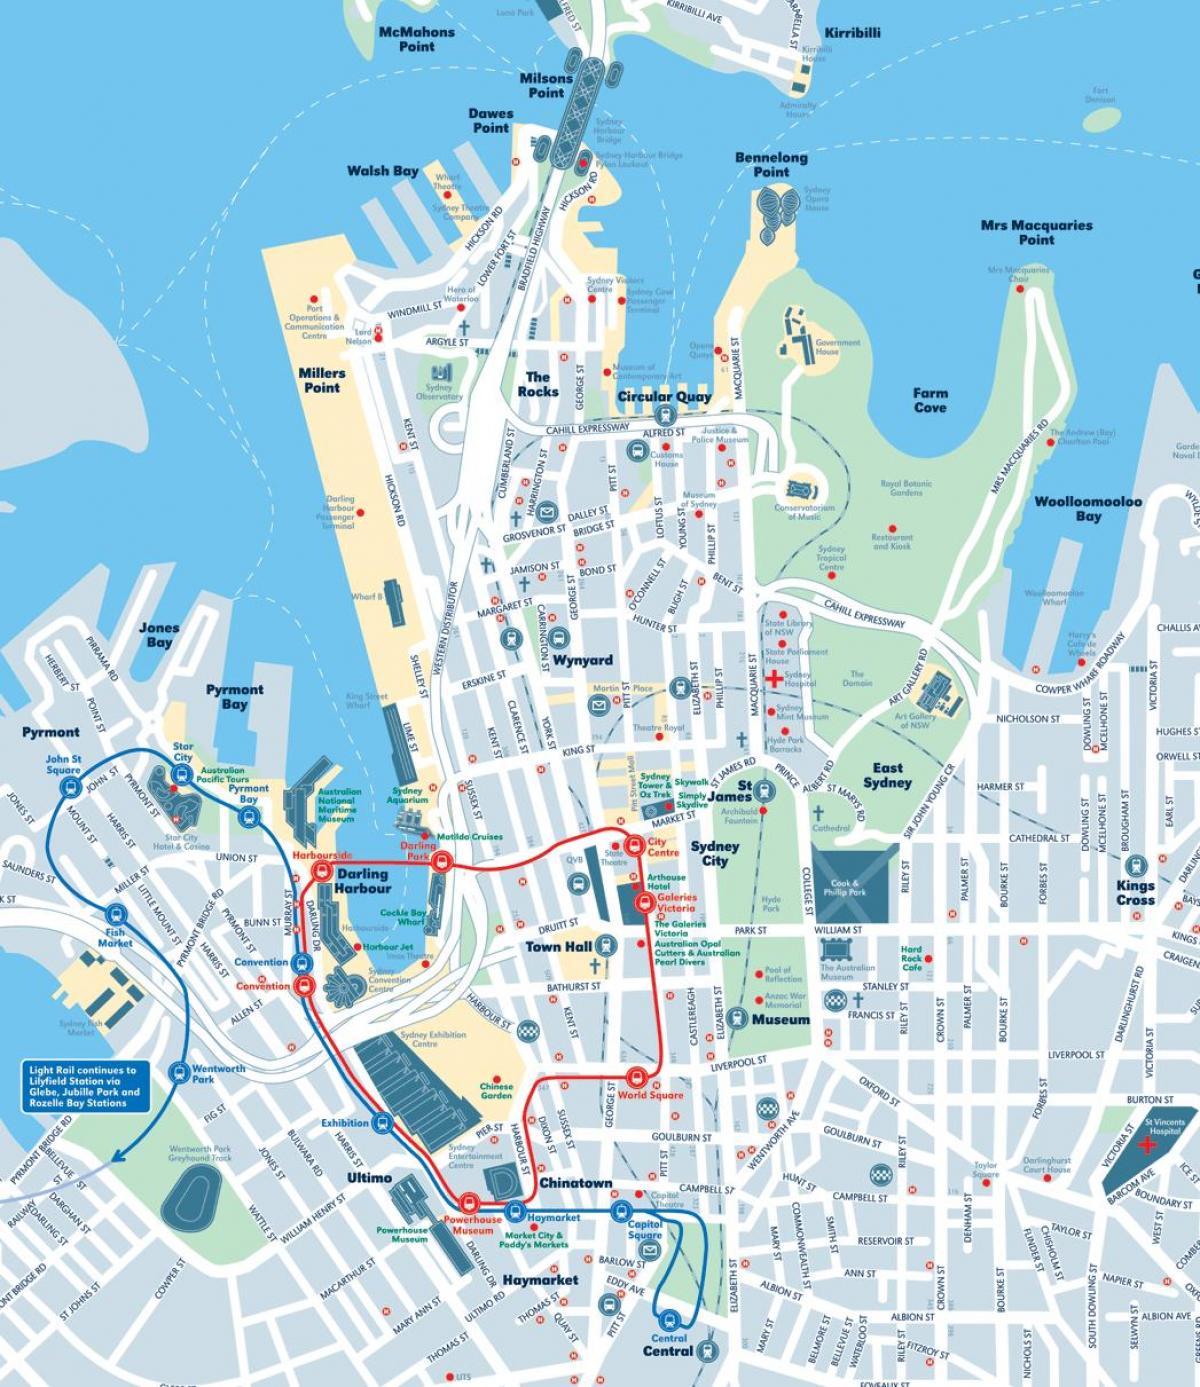 kaart van sydney city